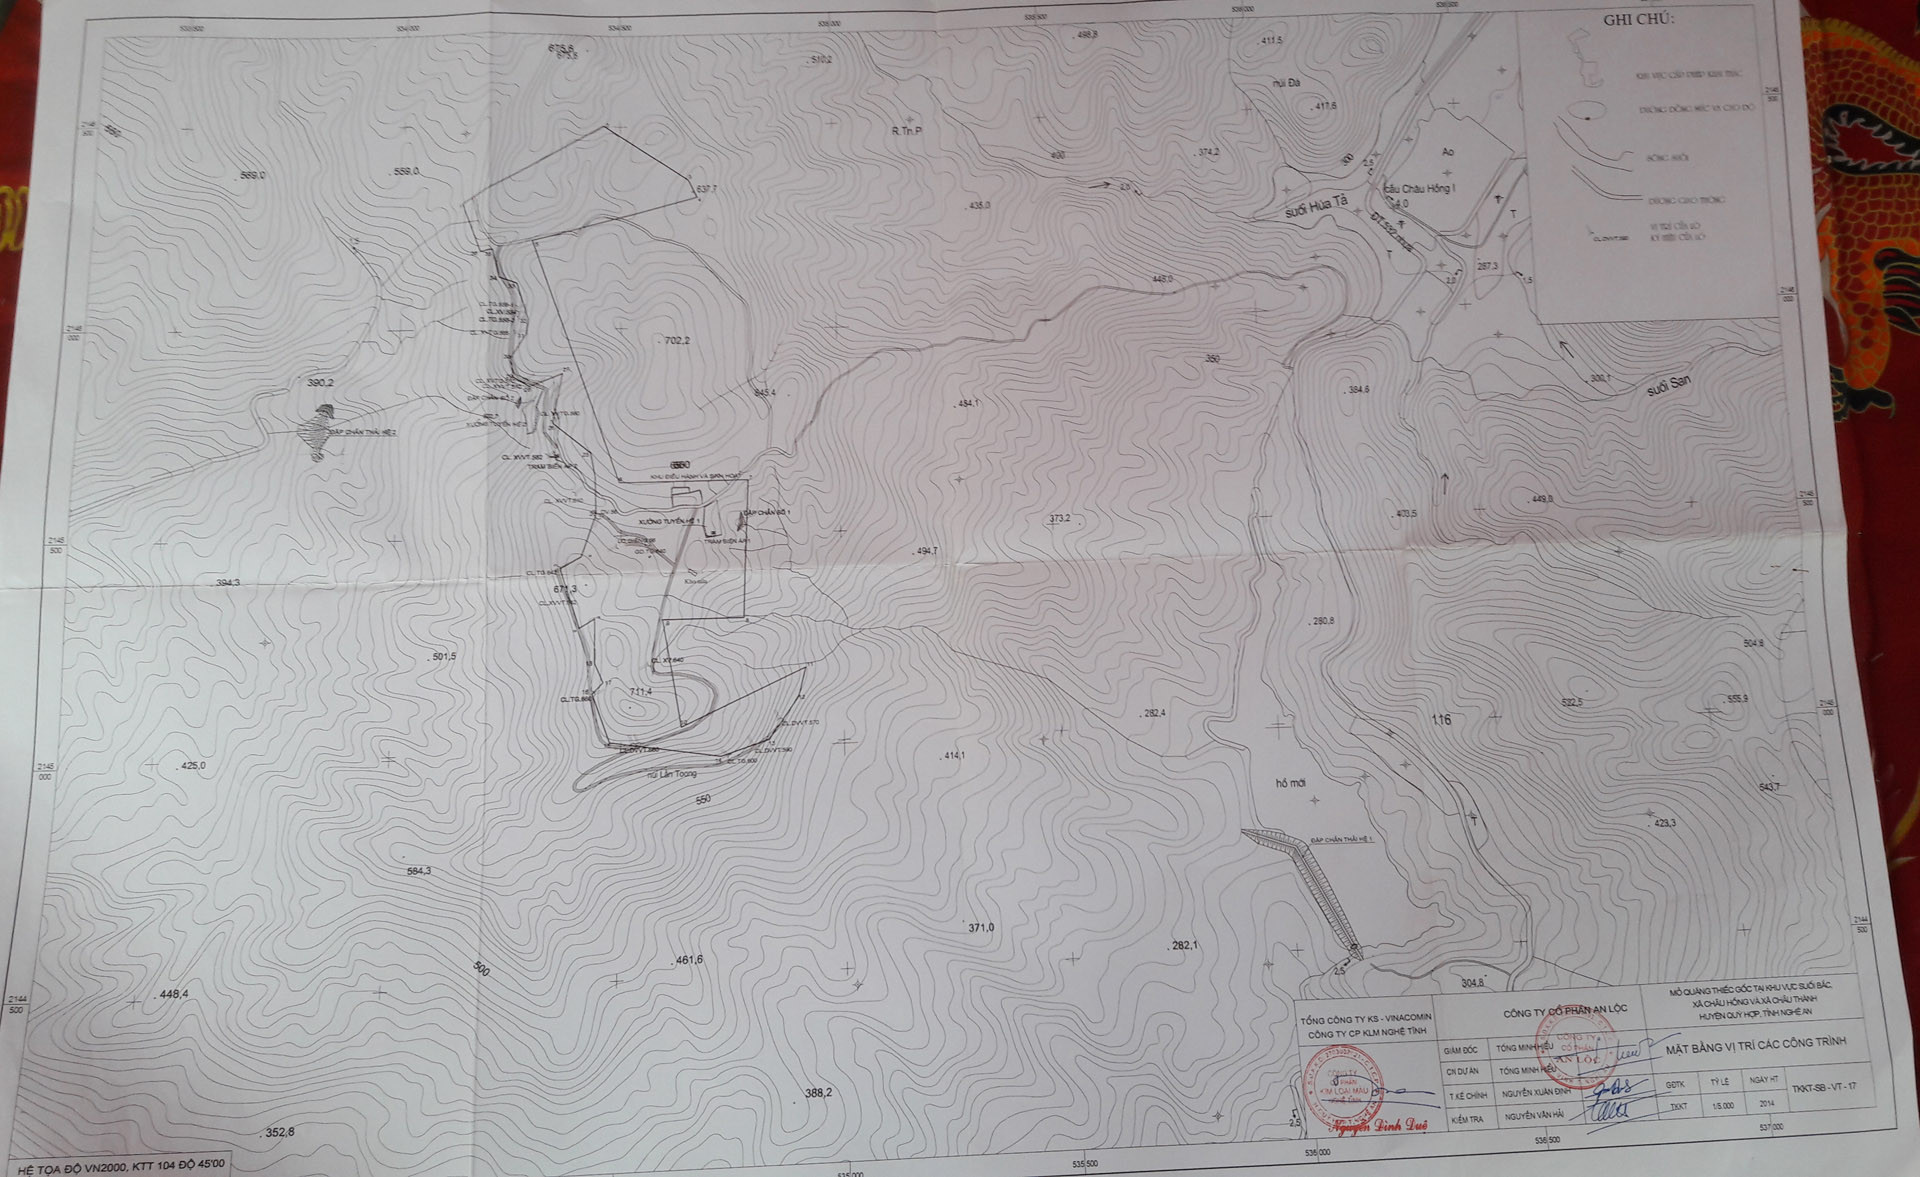 Bản vẽ khu vực khai thác mỏ và vị trí các đập chứa chất thải theo quy hoạch của dự án